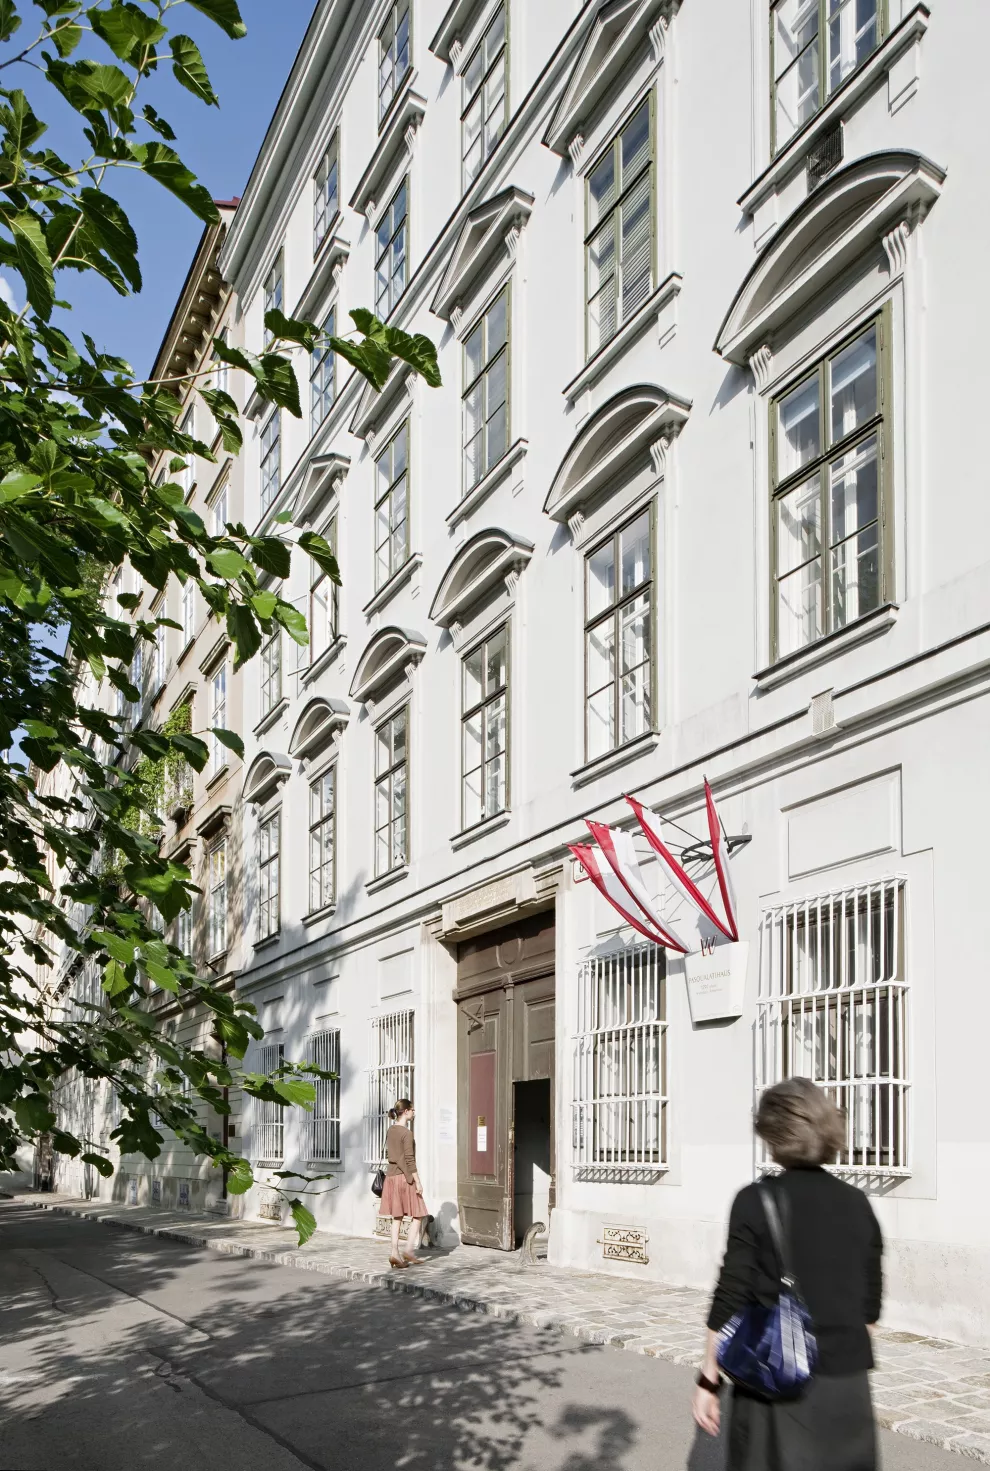 Pasqualatihaus, donde Beethoven residió entre 1804 y 1815